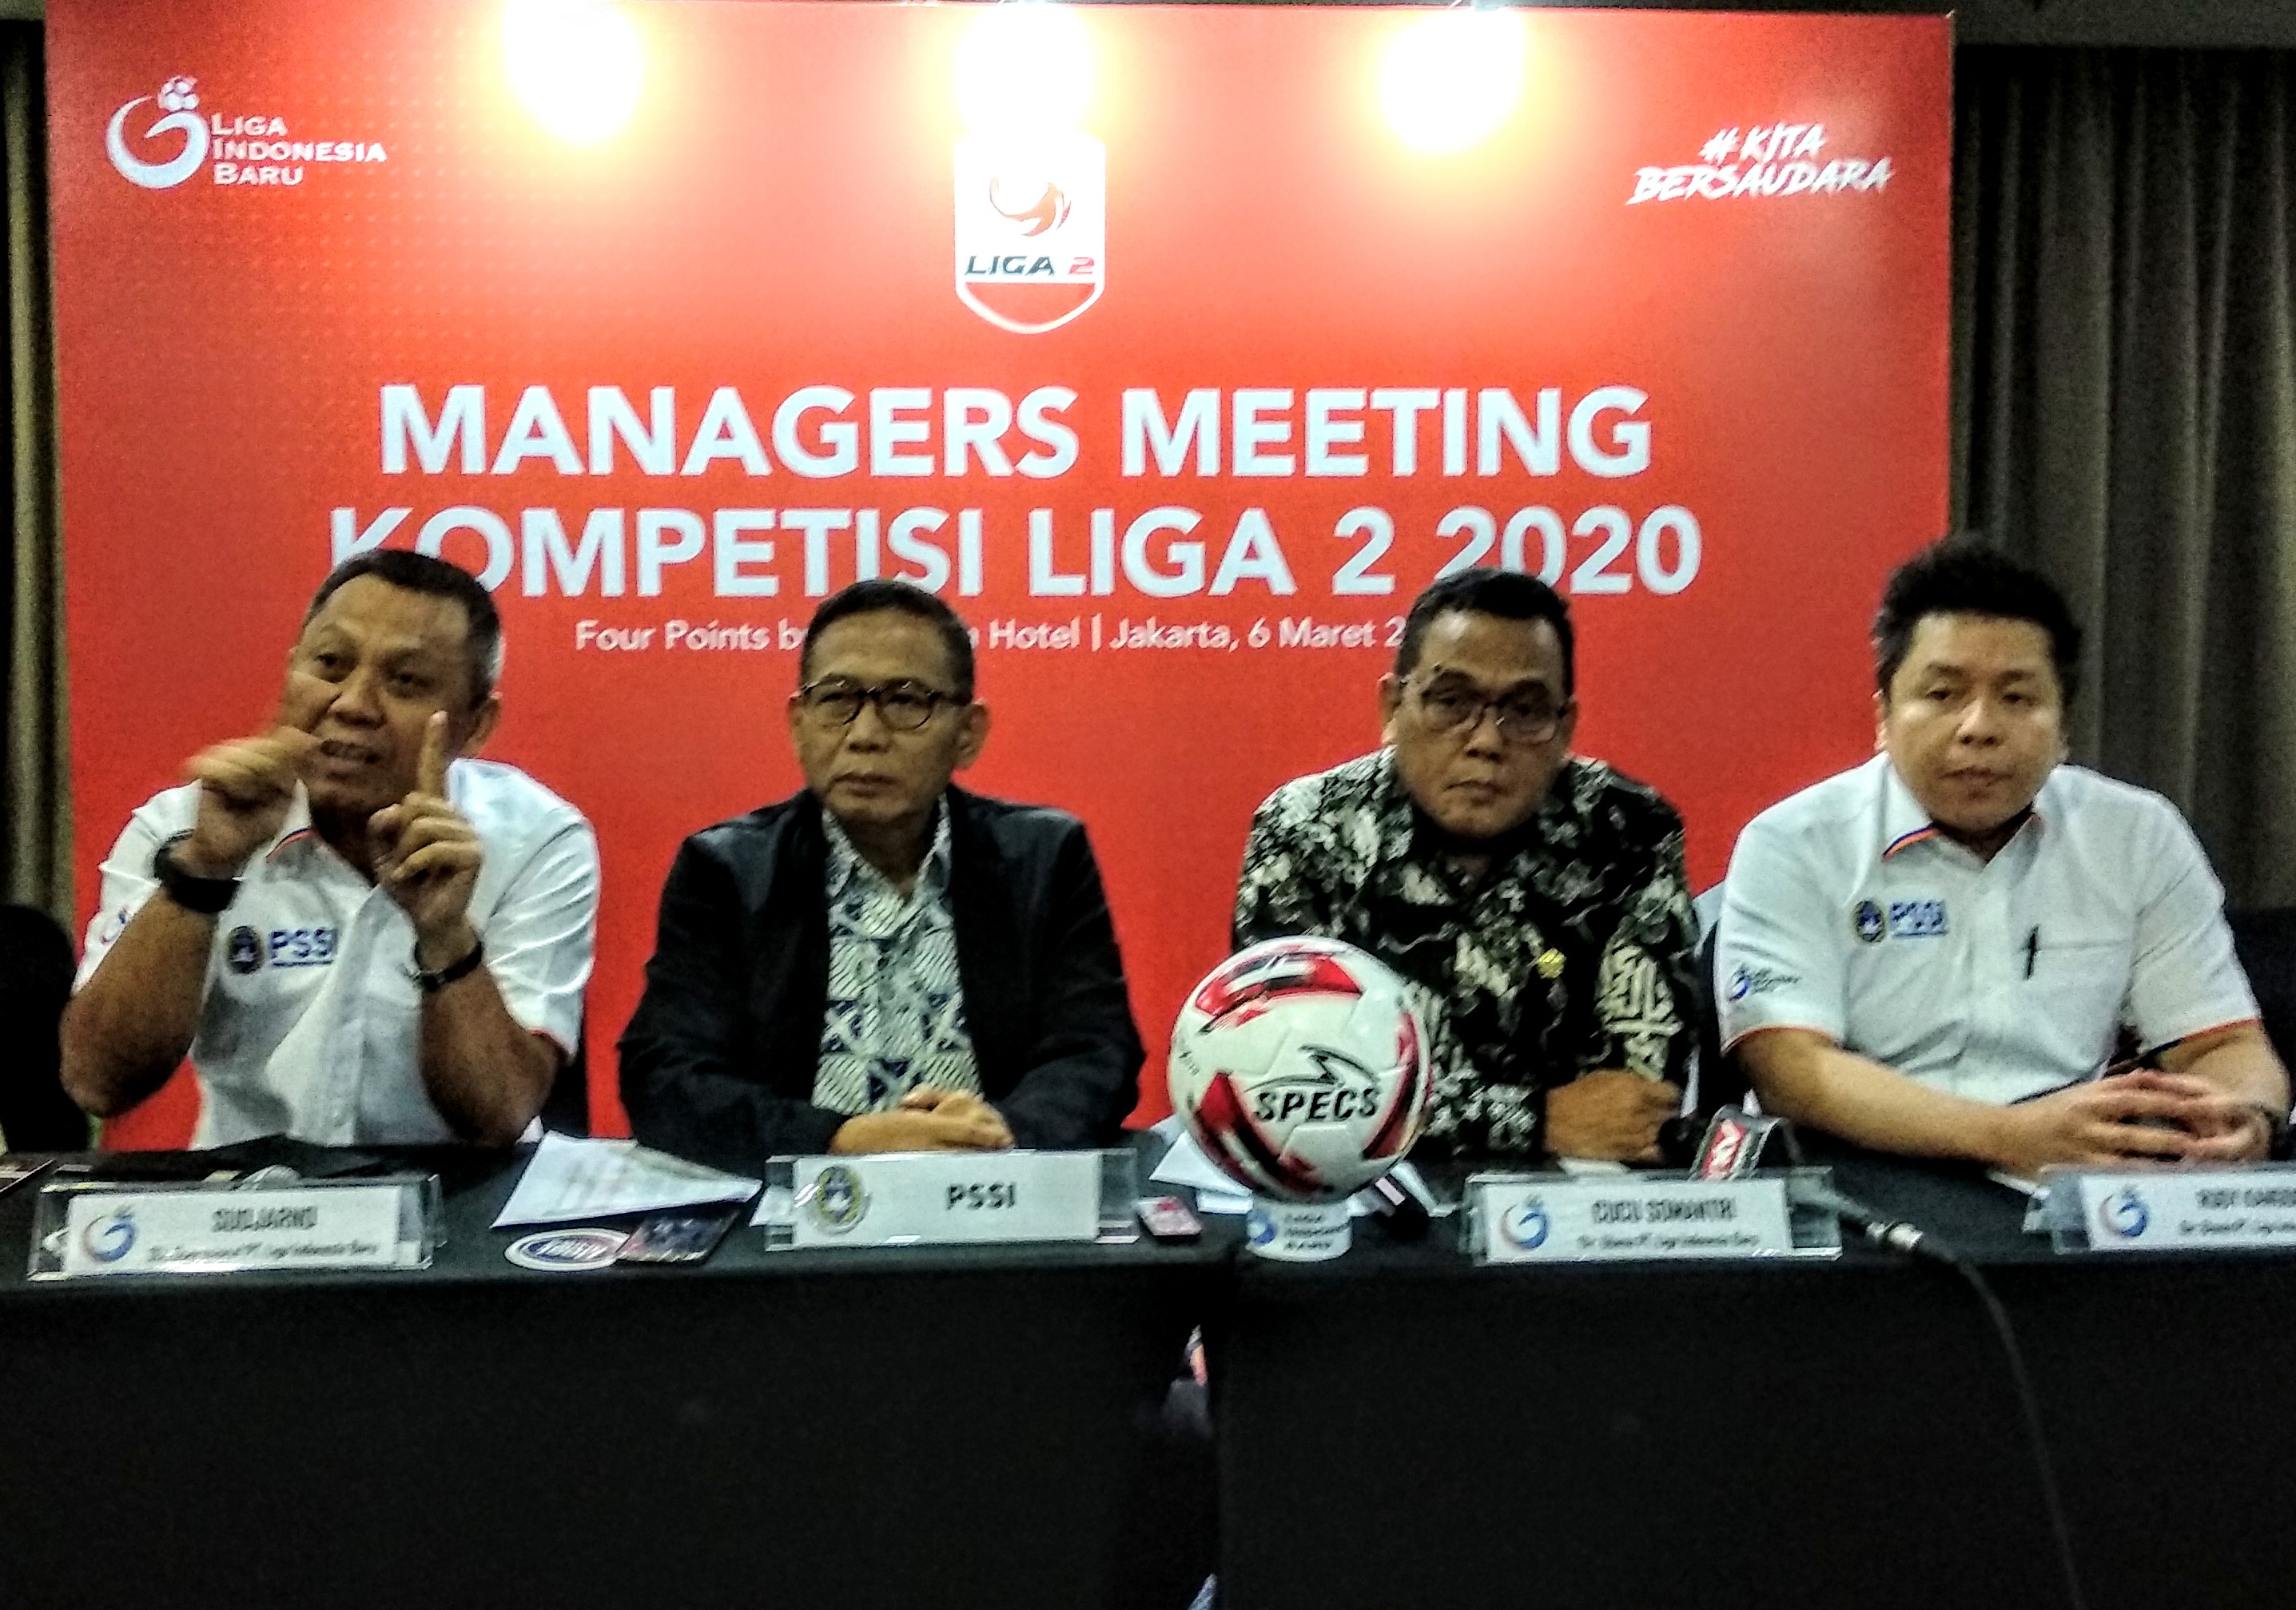 Final Liga 2 2020 Akan Digelar di Stadion Utama Gelora Bung Karno